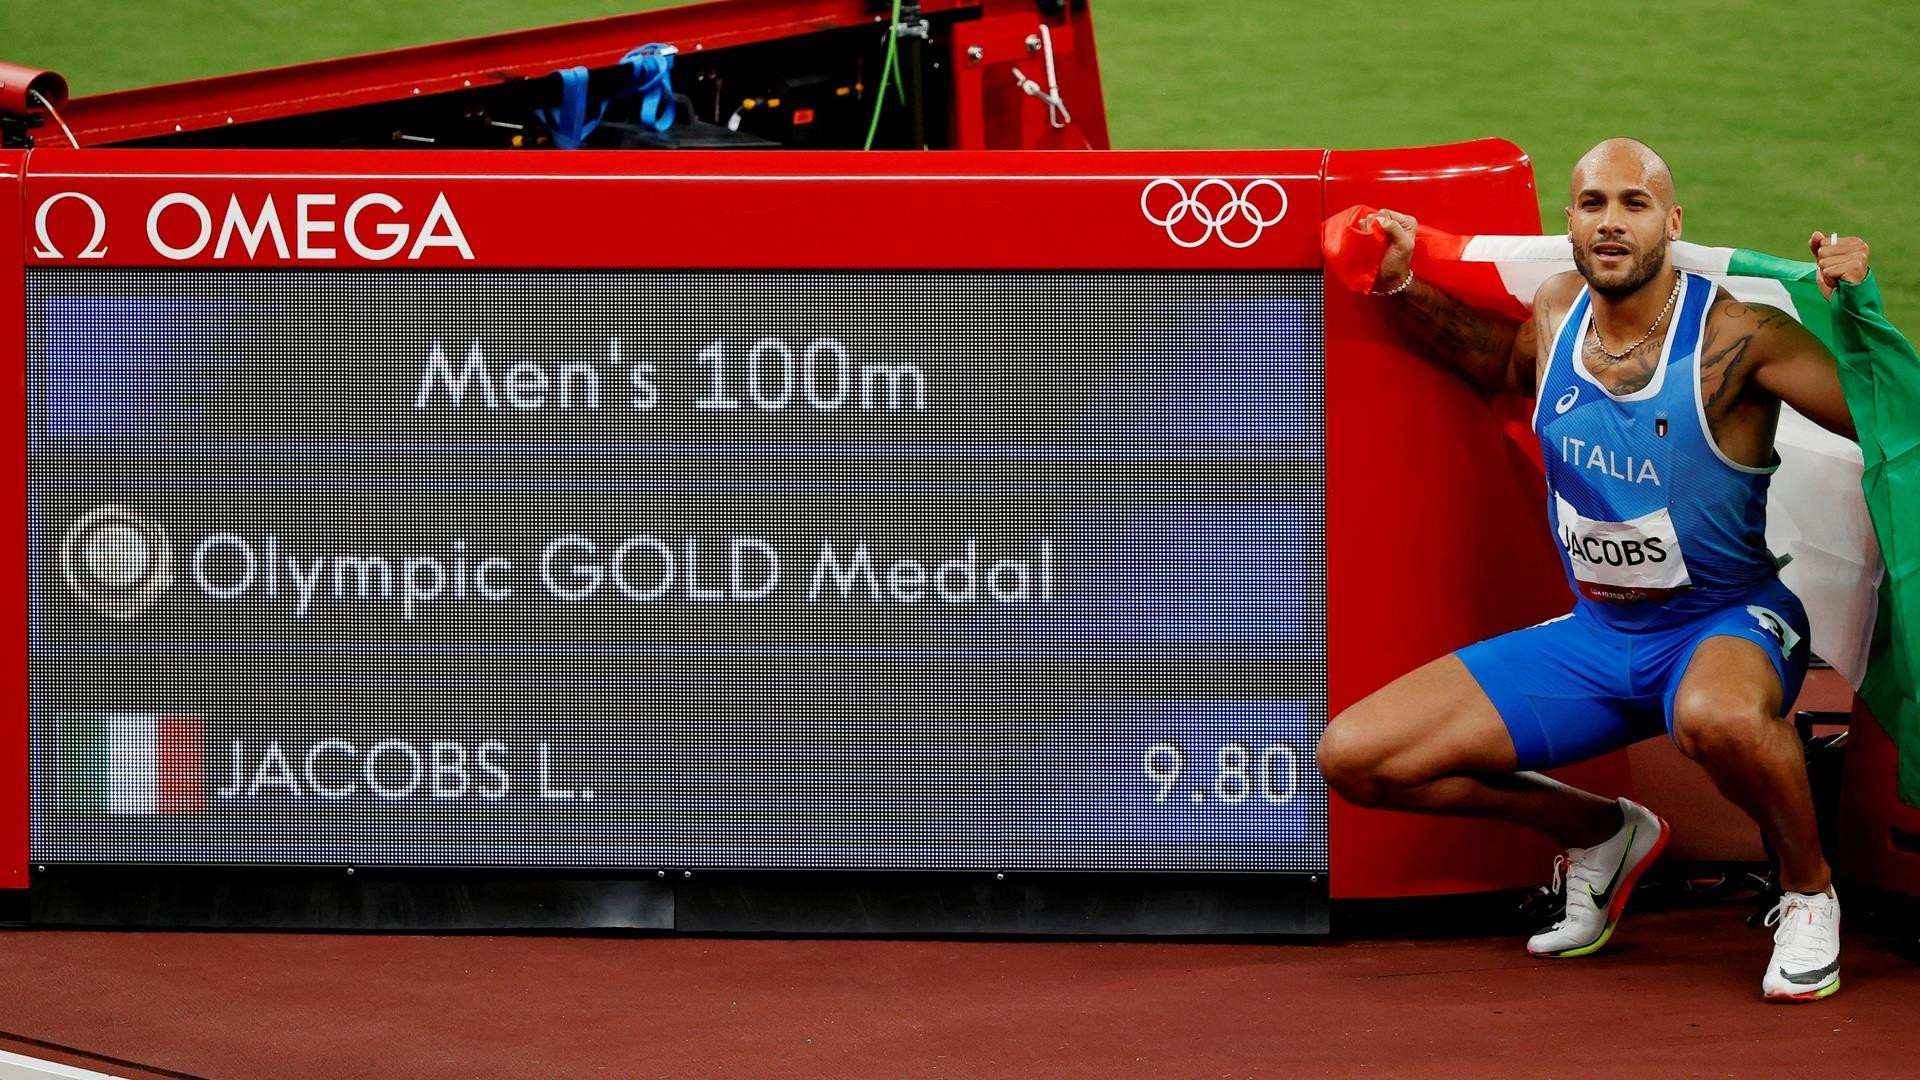 Vô địch Olympic Tokyo, VĐV Italy vẫn kém xa kỷ lục của huyền thoại Usain Bolt - 1